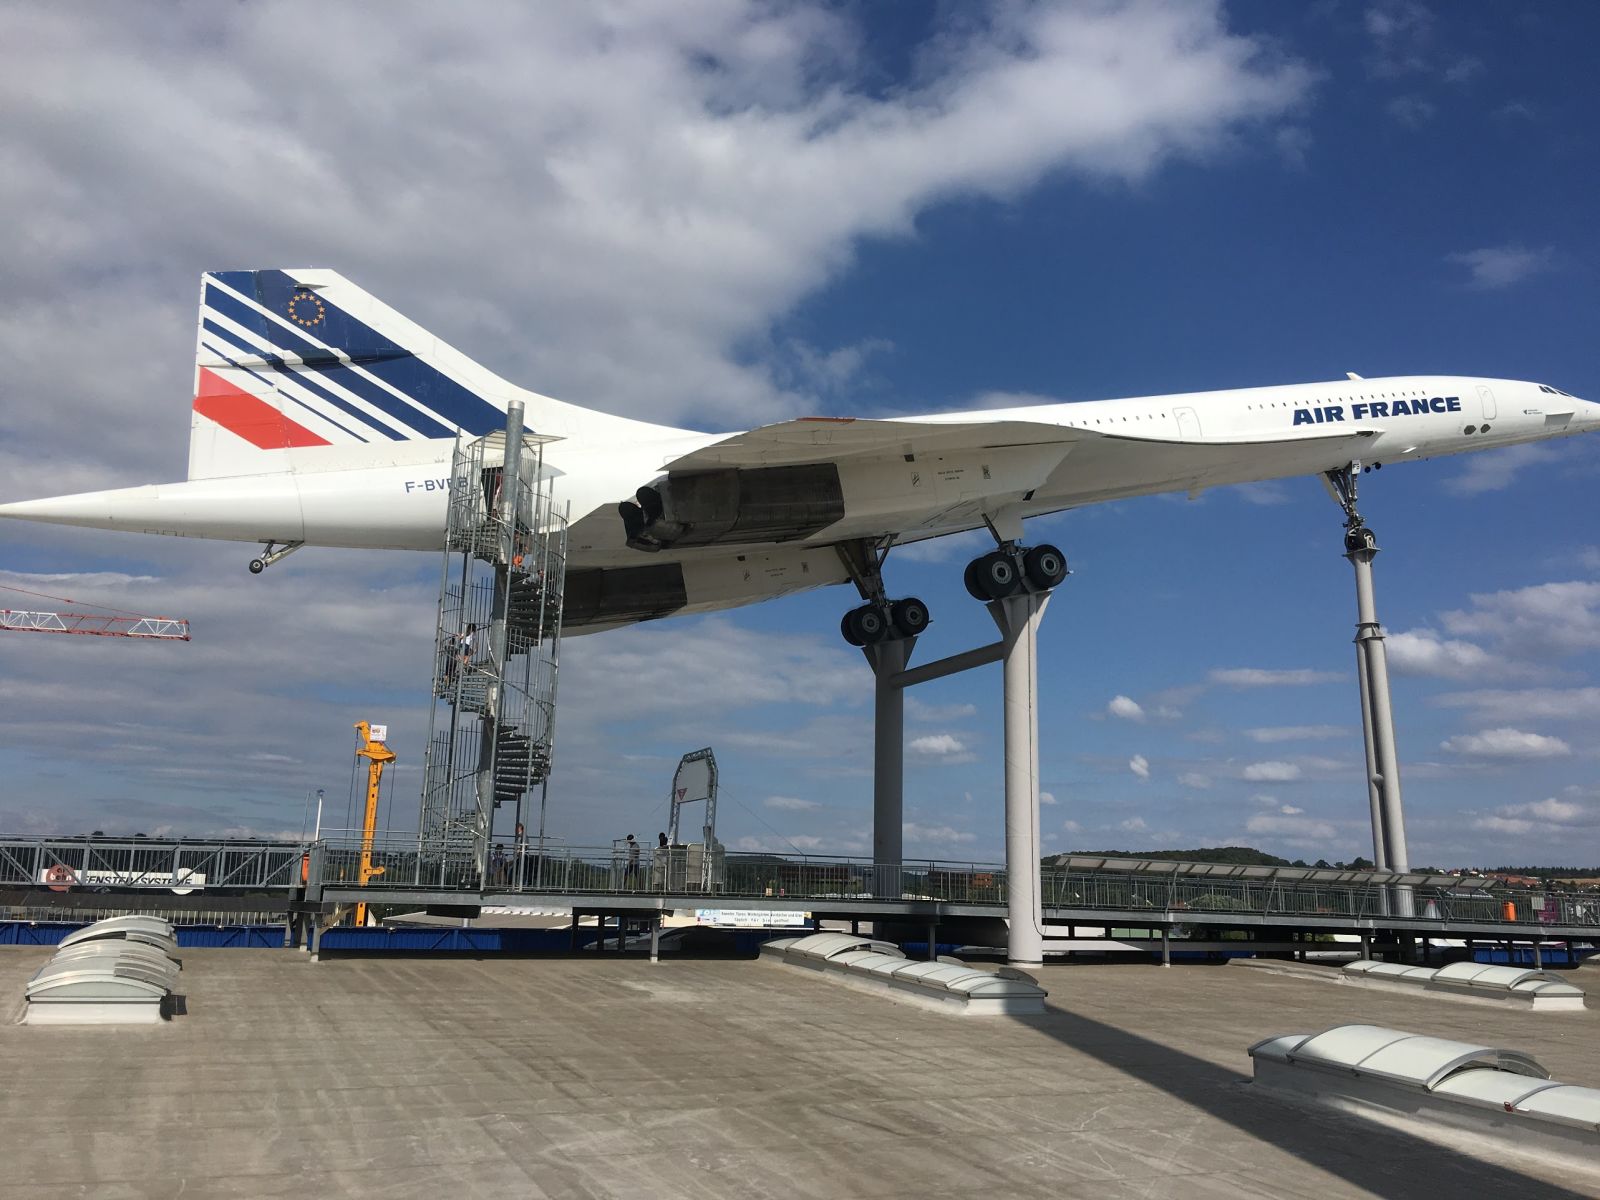 I got to walk through a Concorde